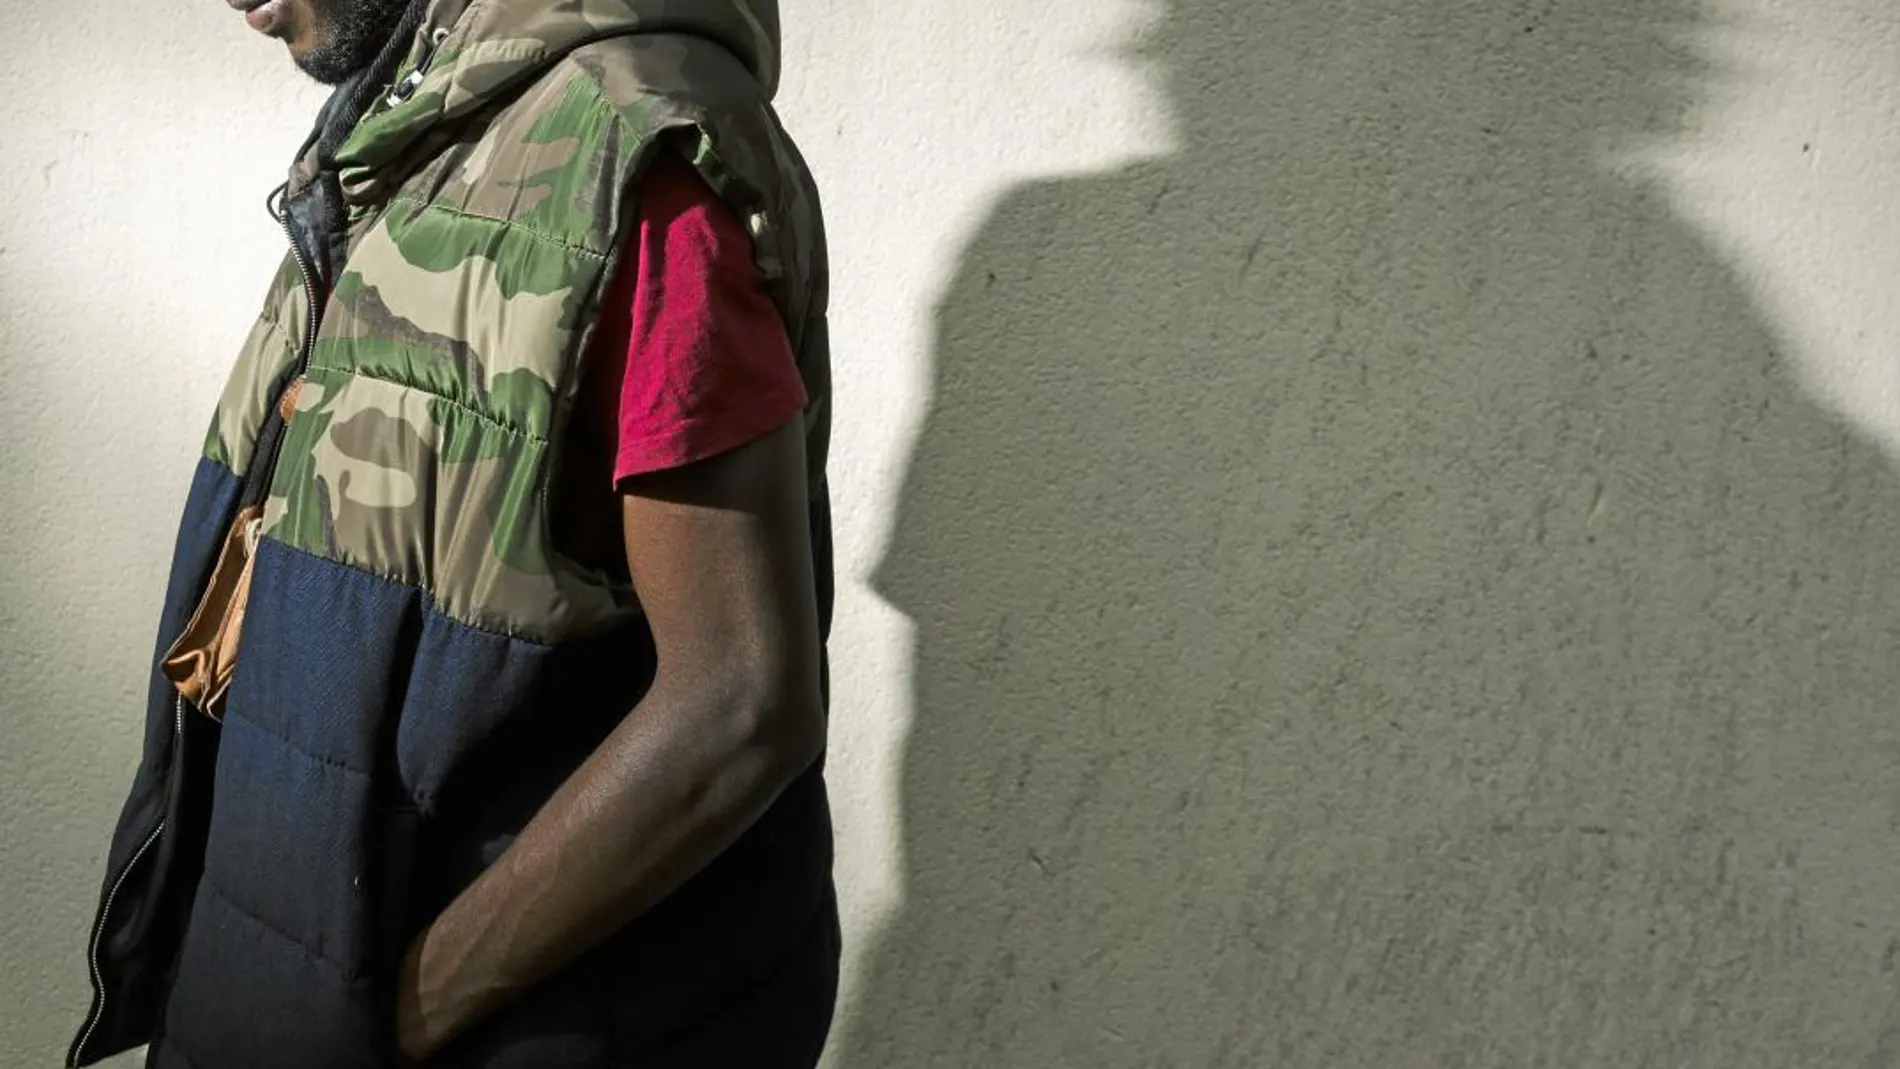 Amid, guineano de 22 años, lleva desde 2013 dando tumbos por el mundo huyendo de la guerra, las mafias y la explotación